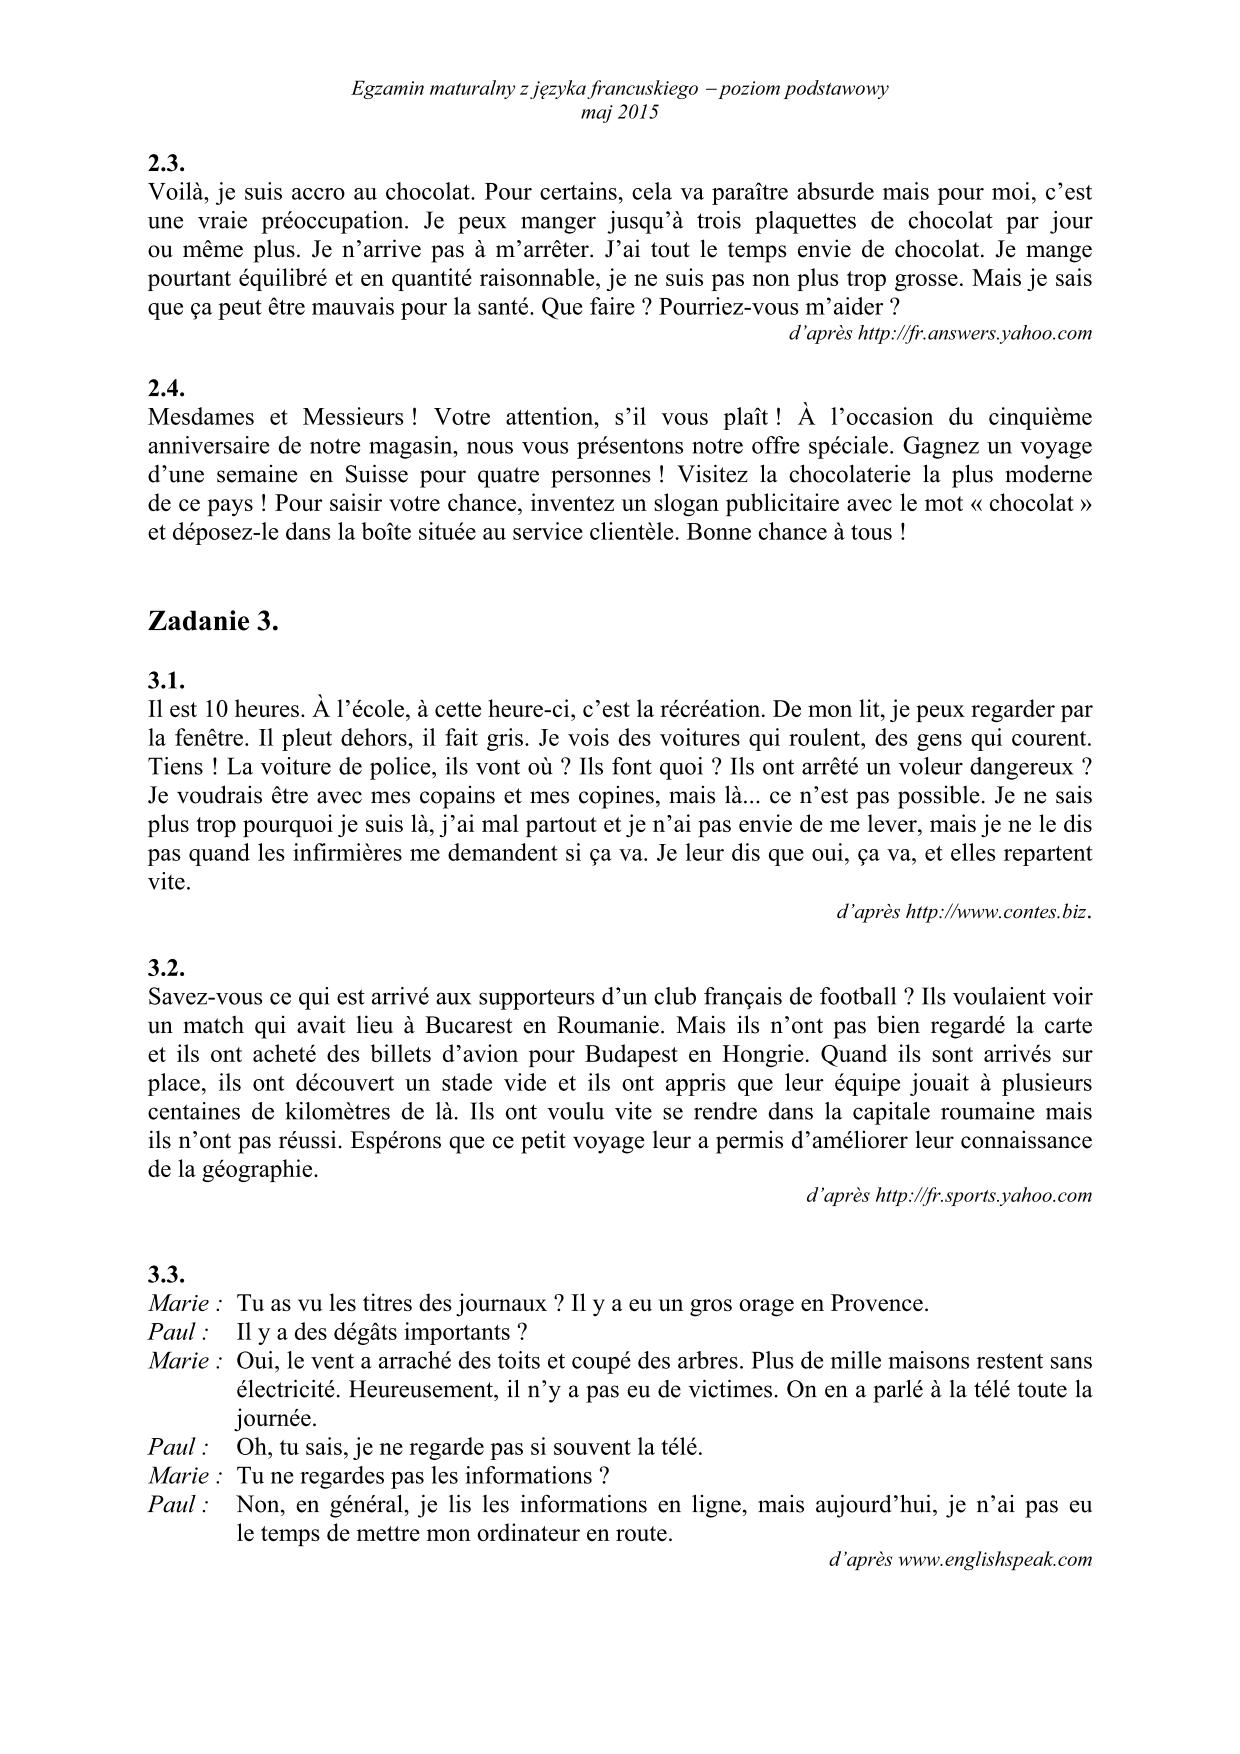 transkrypcja-francuski-poziom-podstawowy-matura-2015-2